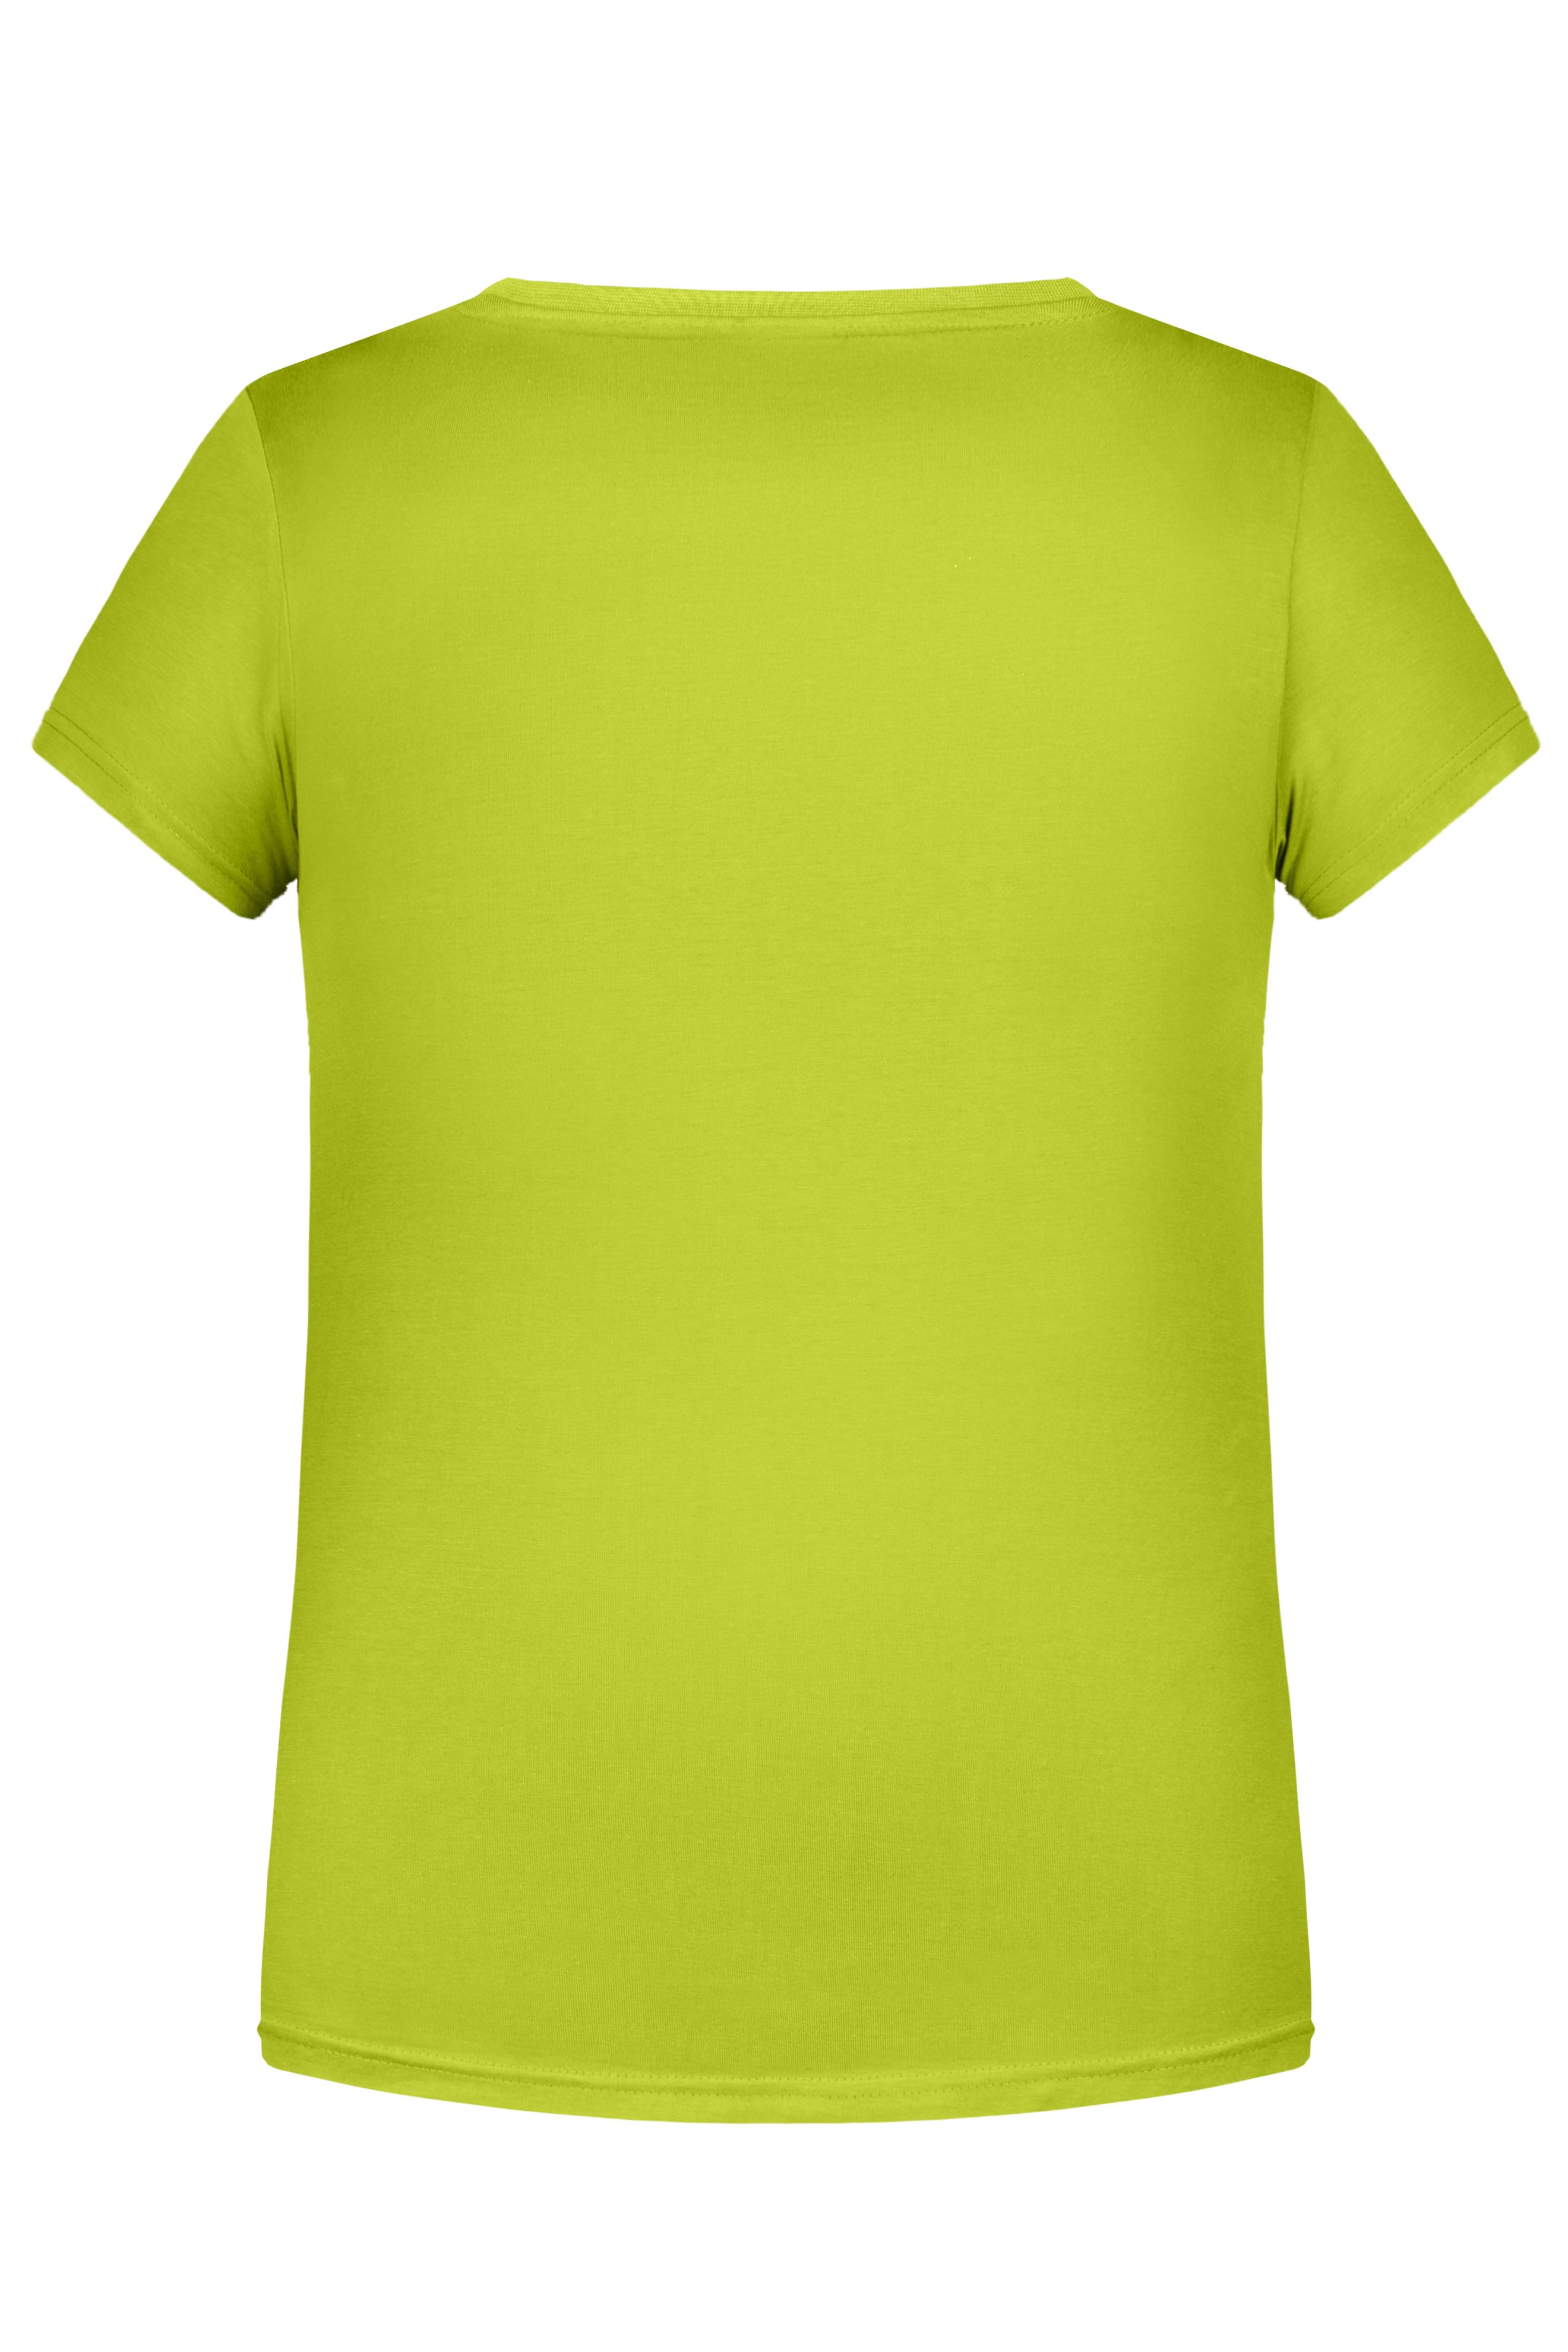 Girls' Basic-T 8007G T-Shirt für Kinder in klassischer Form